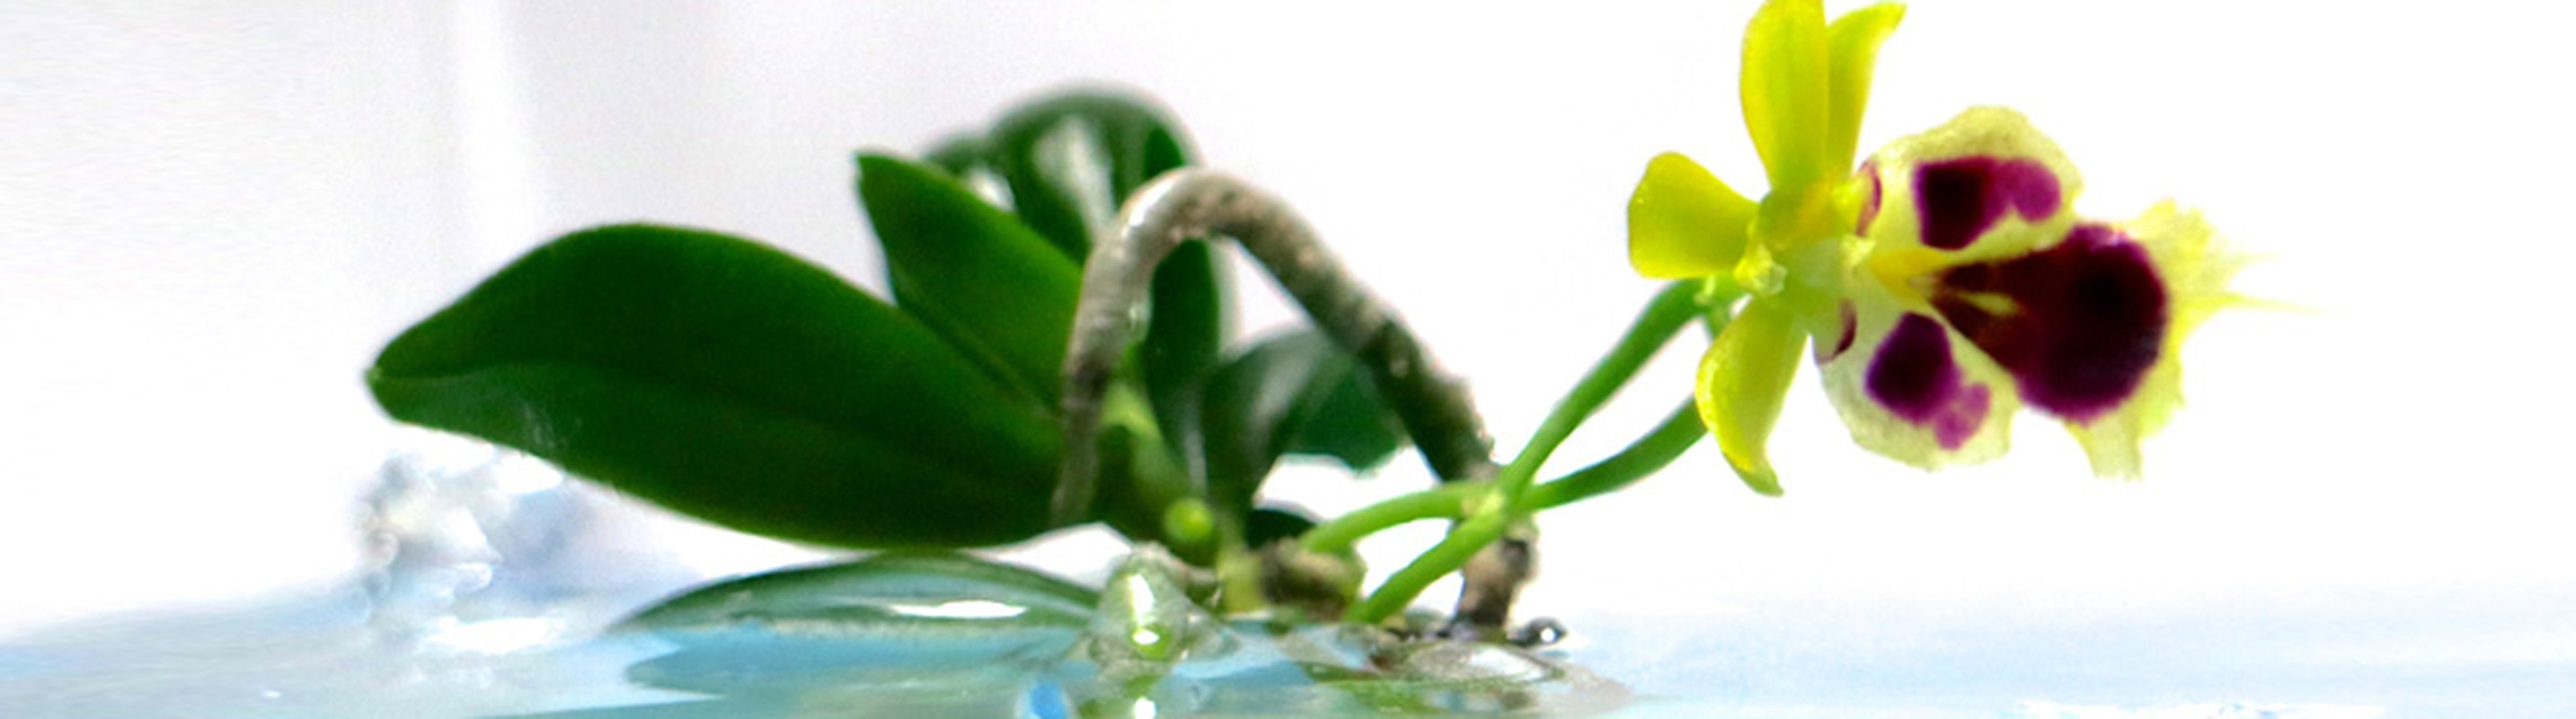 Man nhan loat bonsai phong lan dep hut mat-Hinh-9